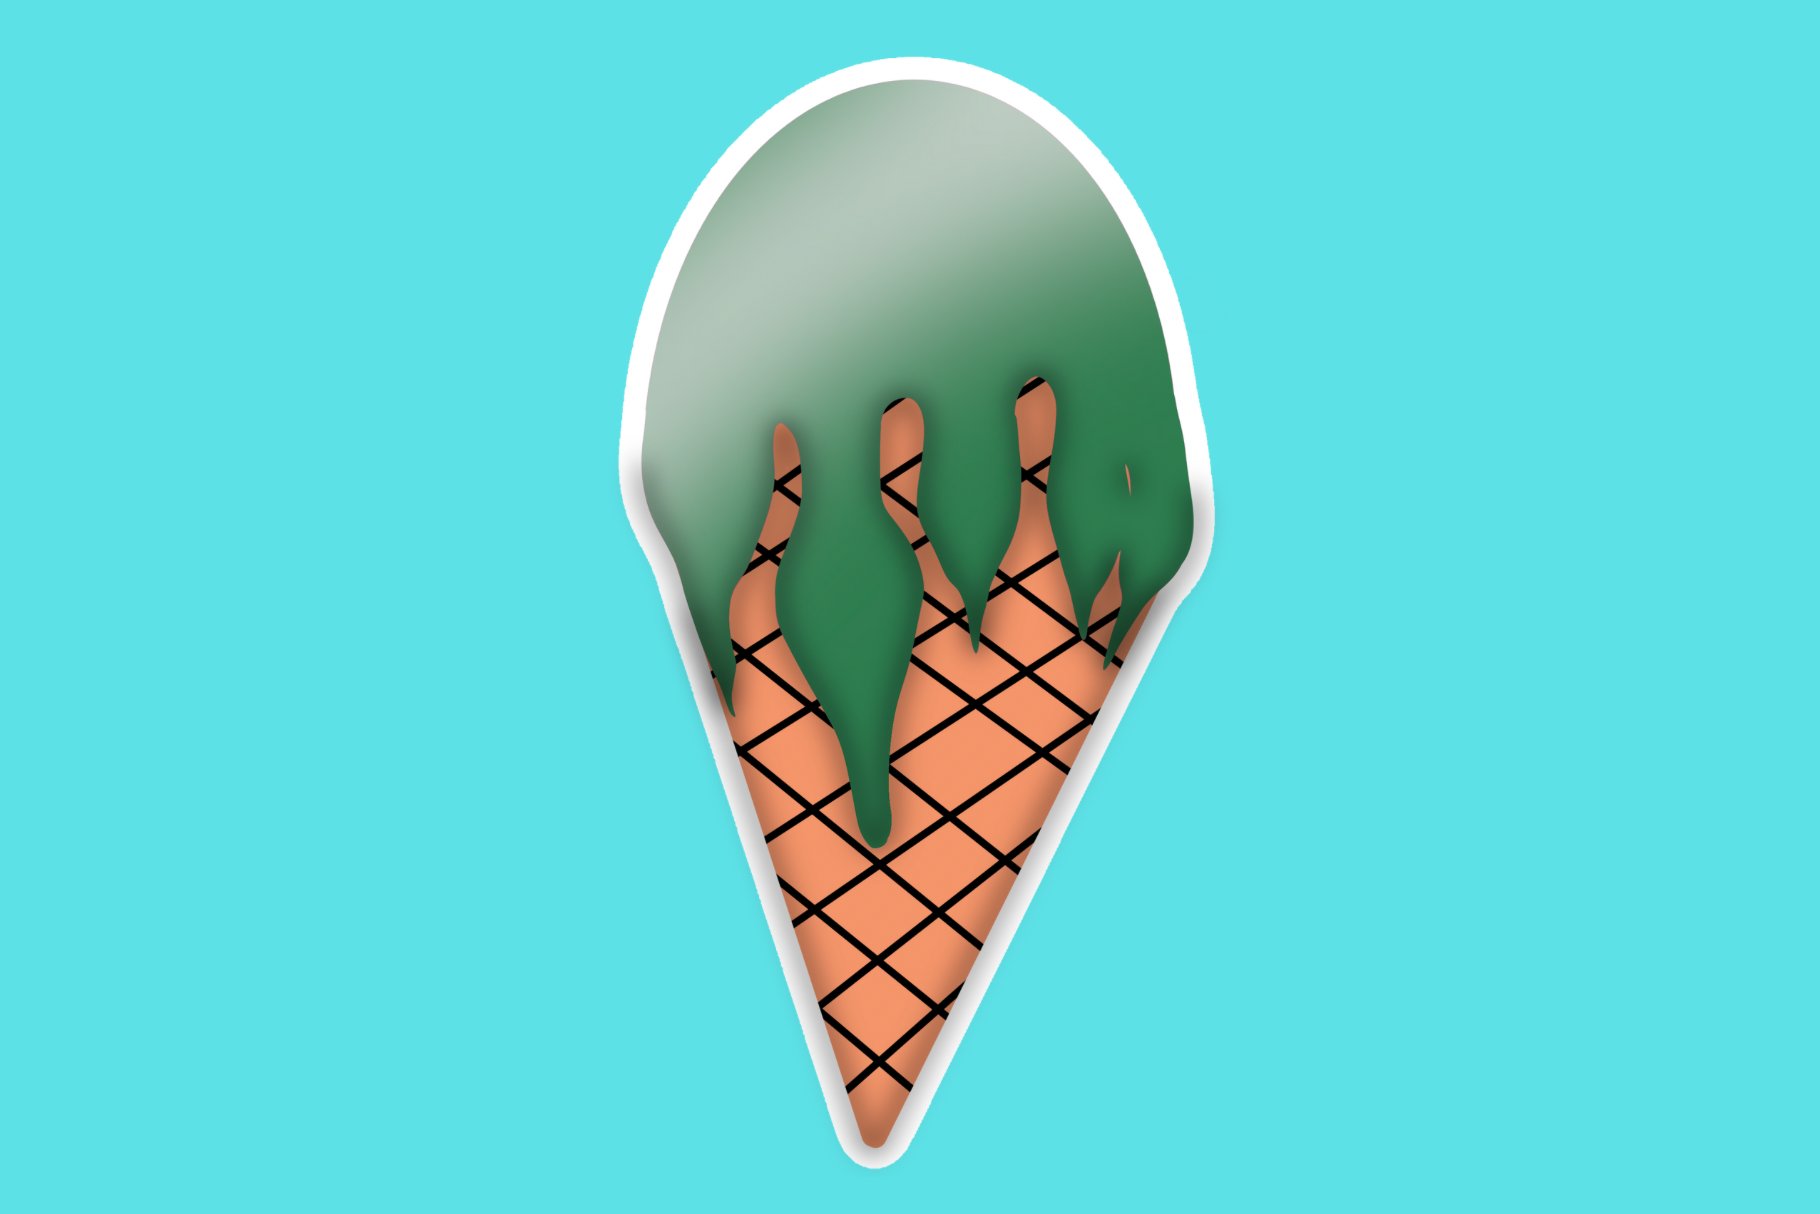 Mint Ice Cream Cone Sticker cover image.